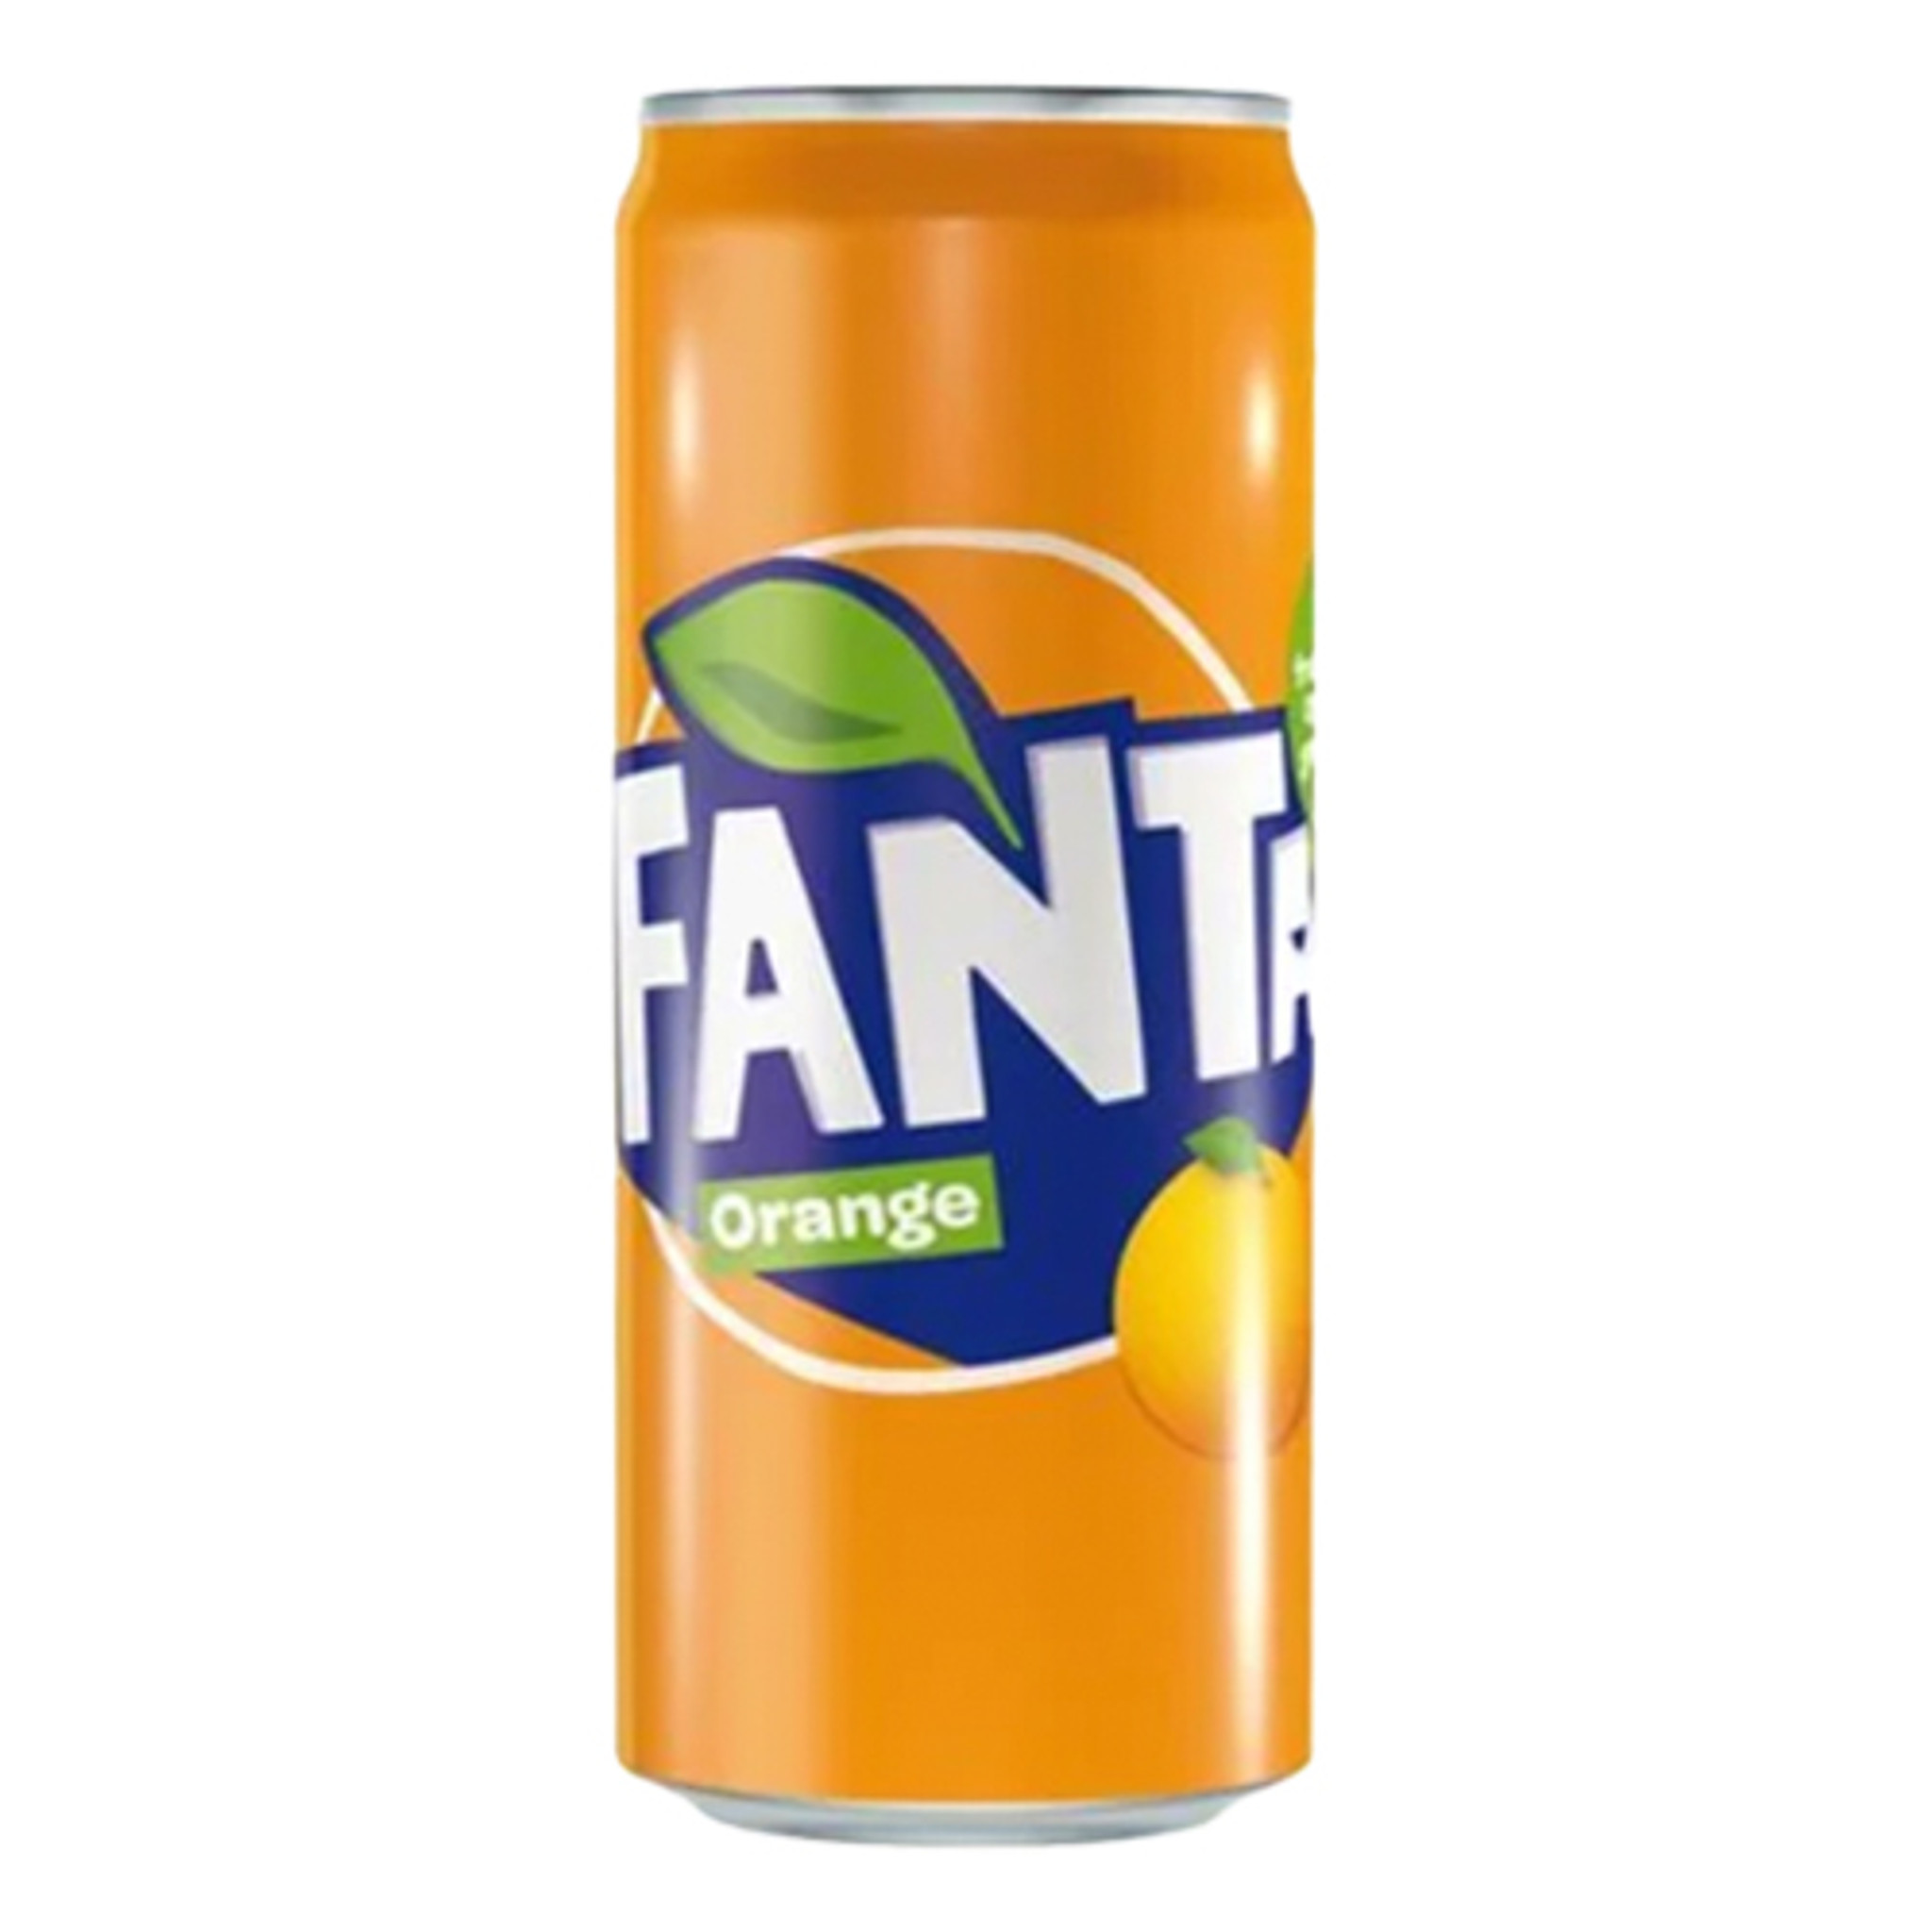 - in bottled Germany Germany The oz 11.2 - Can, of Taste Fanta in Orange Soda